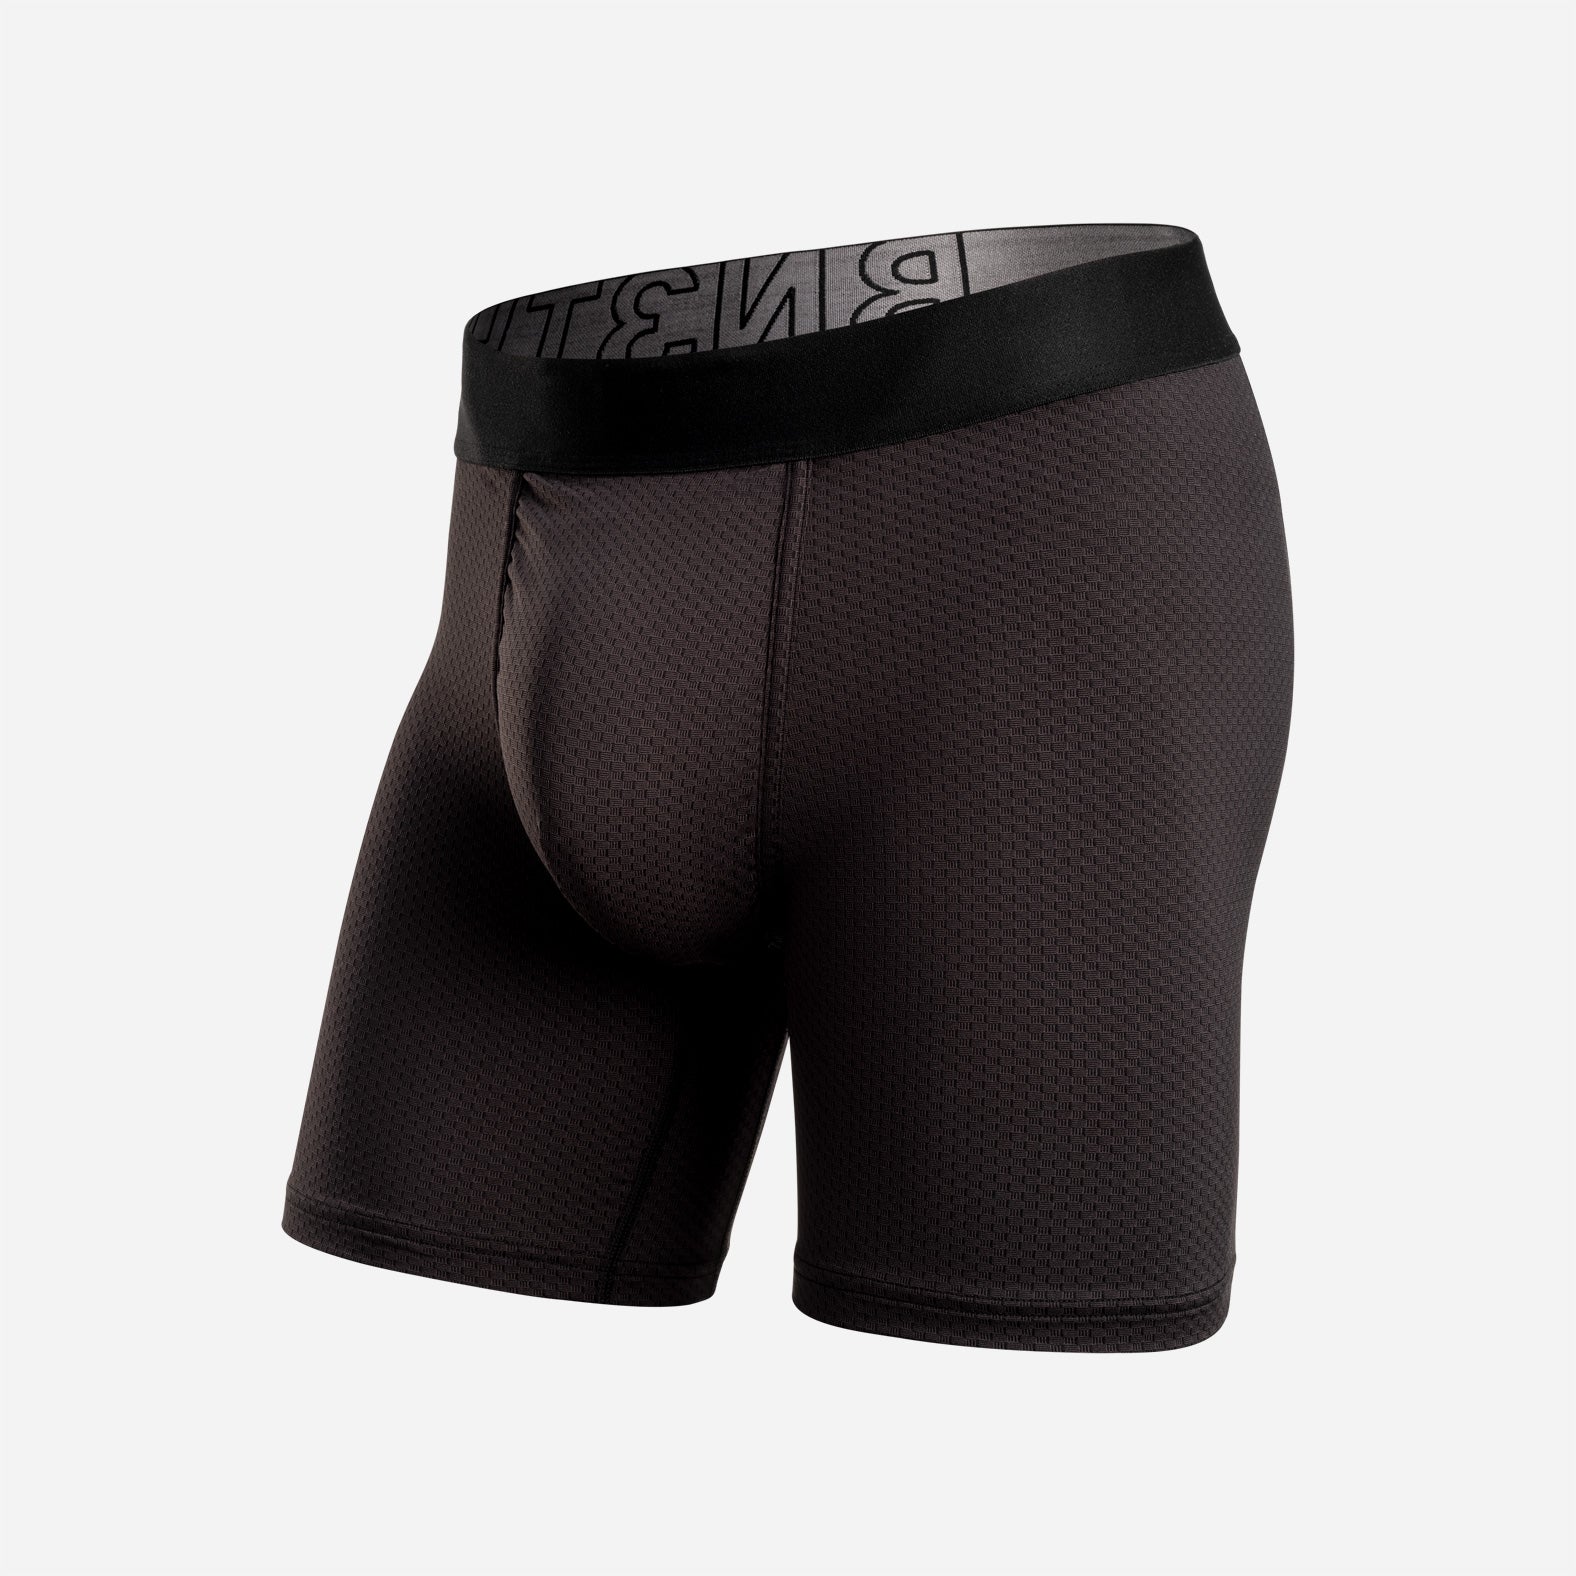 Lux Cotton Modal Anti Chafing Underwear Short 9 